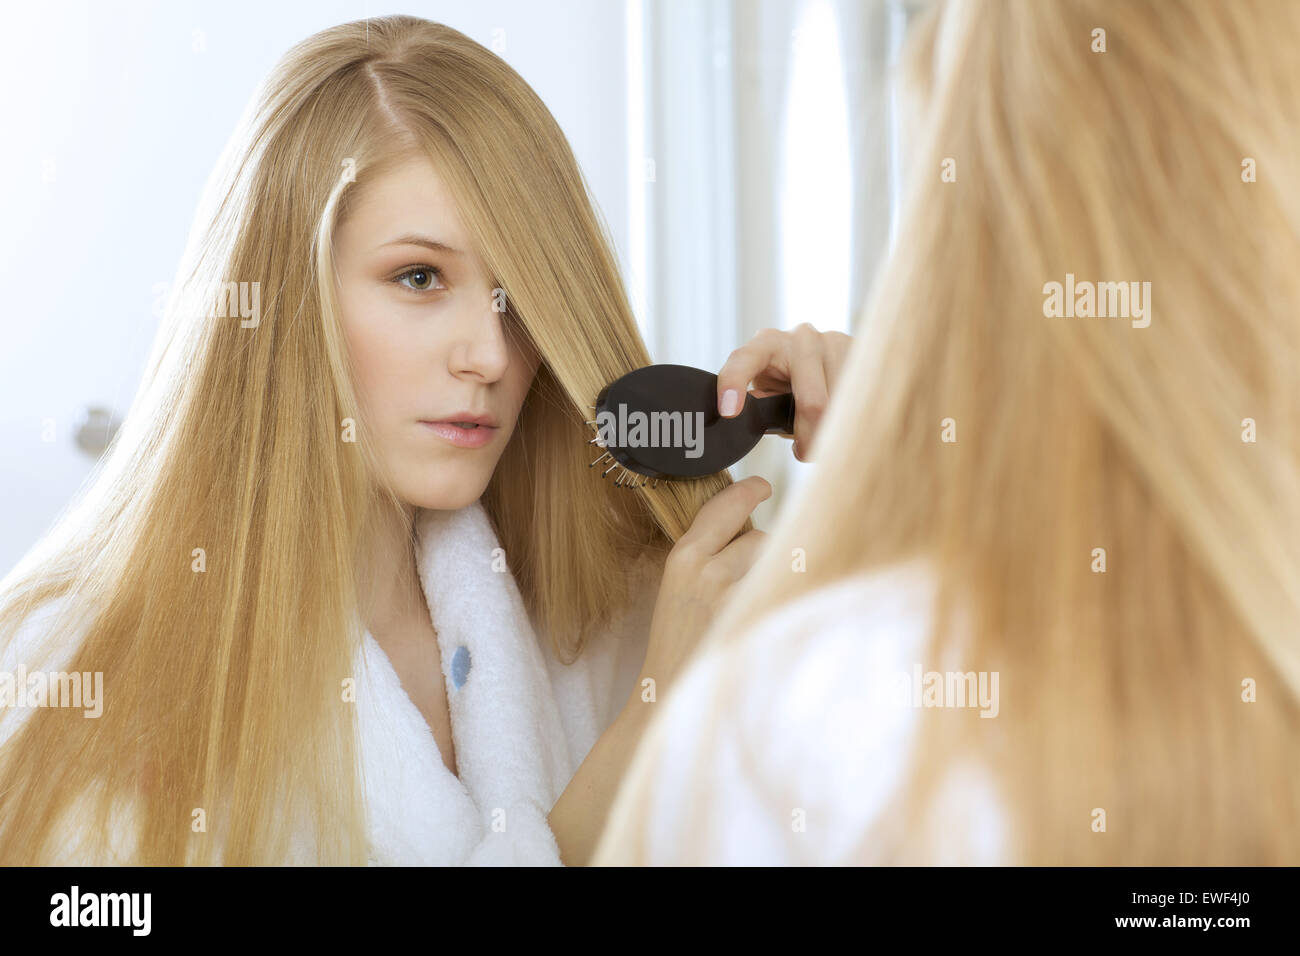 Woman brushing hair Stock Photo